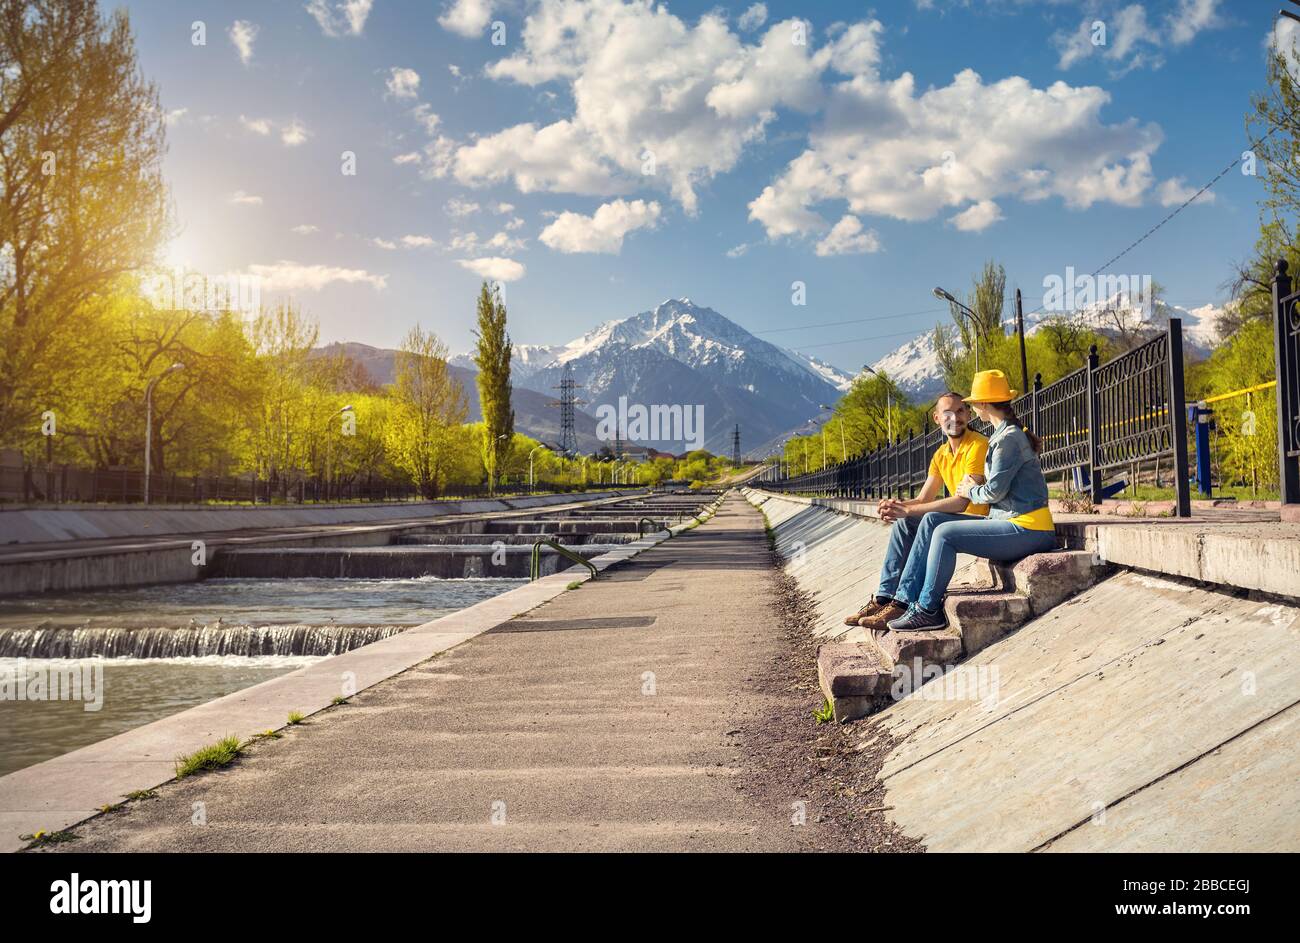 Heureux couple en costumes bleu et jaune assis sur le escaliers près de la rivière et les montagnes enneigées en arrière-plan Almaty, Kazakhstan Banque D'Images